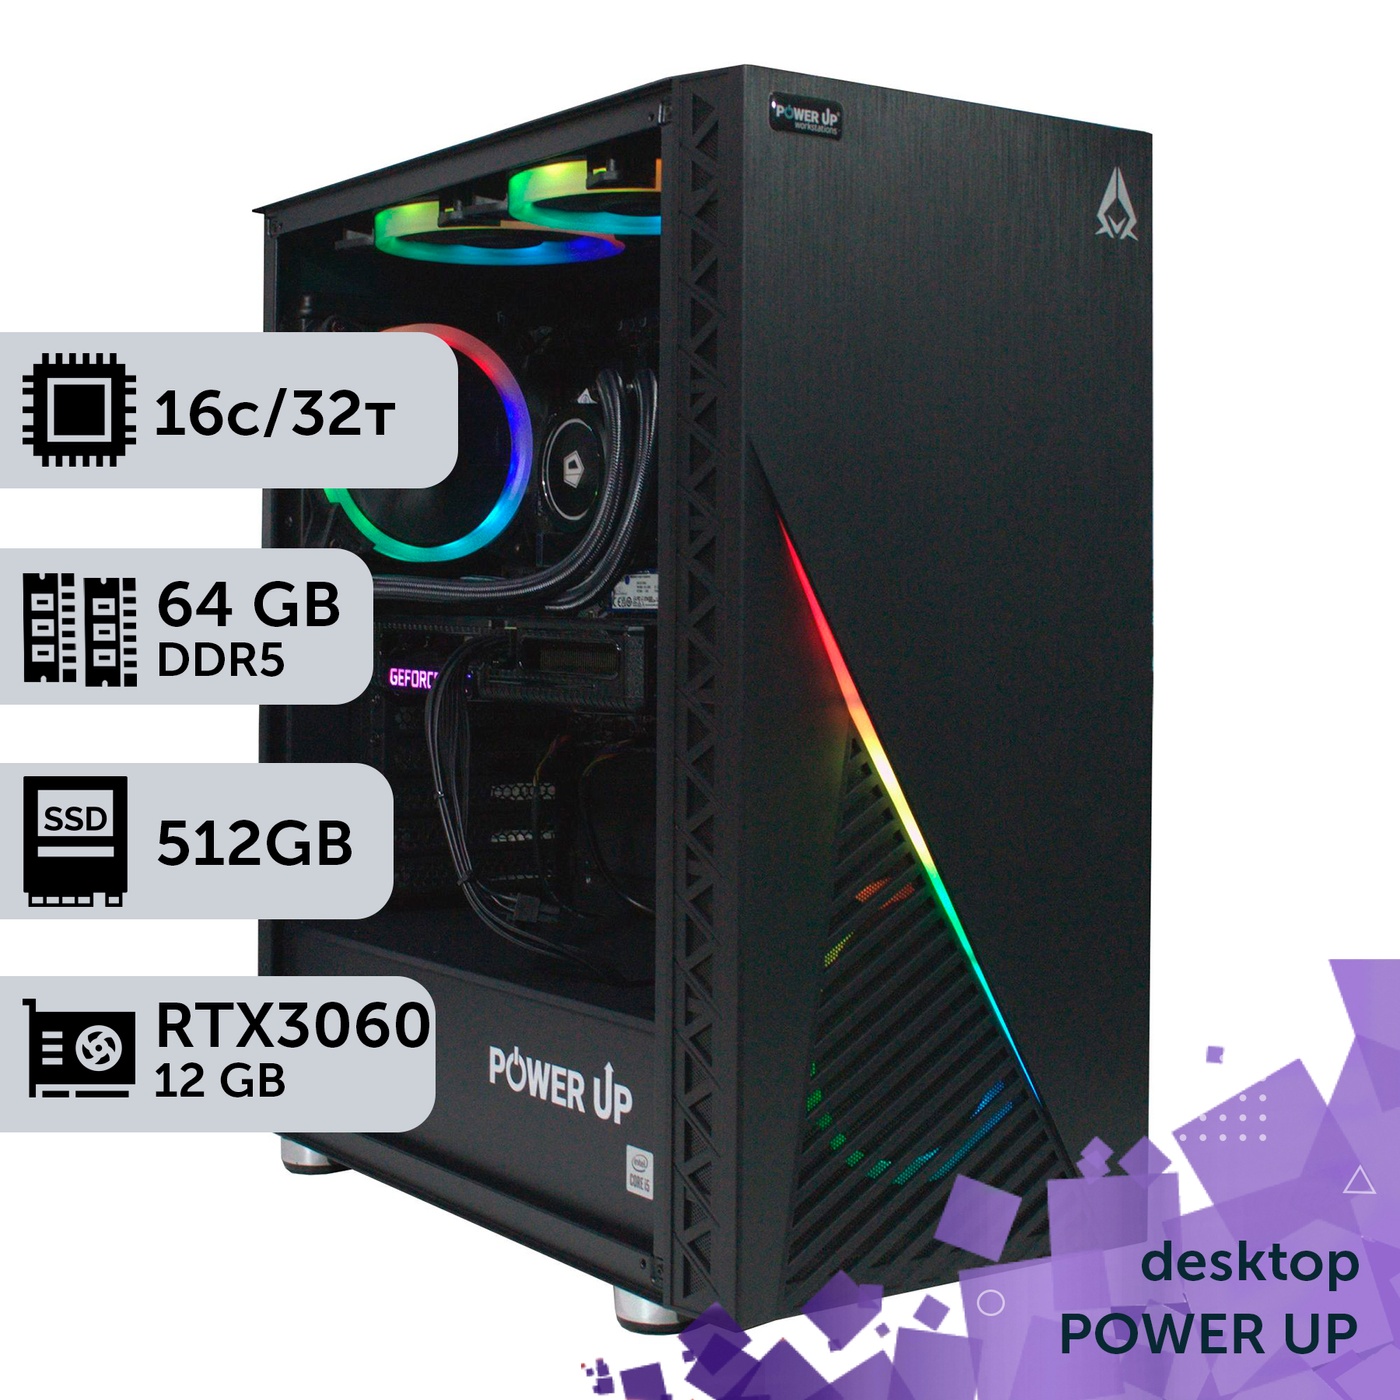 Рабочая станция PowerUp Desktop #165 Ryzen 9 7950x/64 GB/HDD 1 TB/SSD 512GB/GeForce RTX 3060 12GB